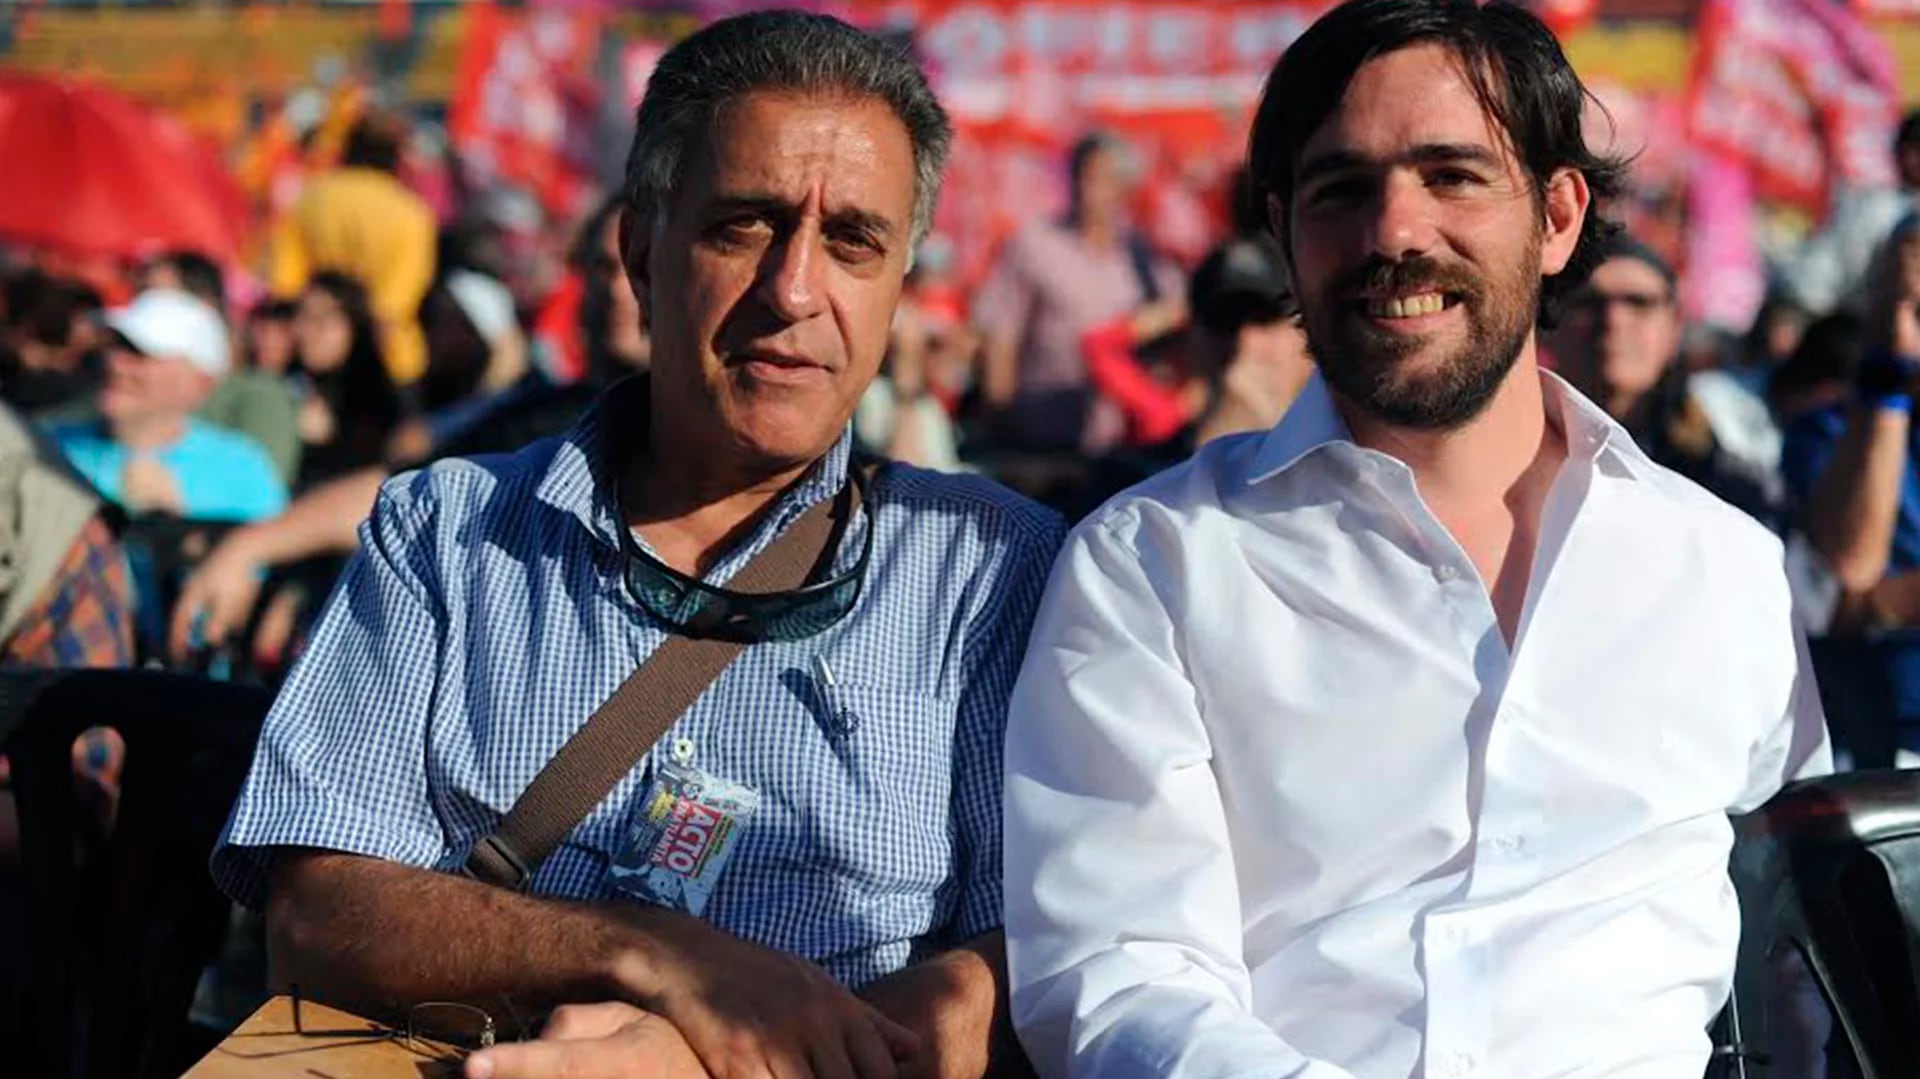 Néstor Pitrola y Nicolás del Caño se disputan el primer lugar para encabezar la boleta de diputados nacionales. (Prensa Partido Obrero)